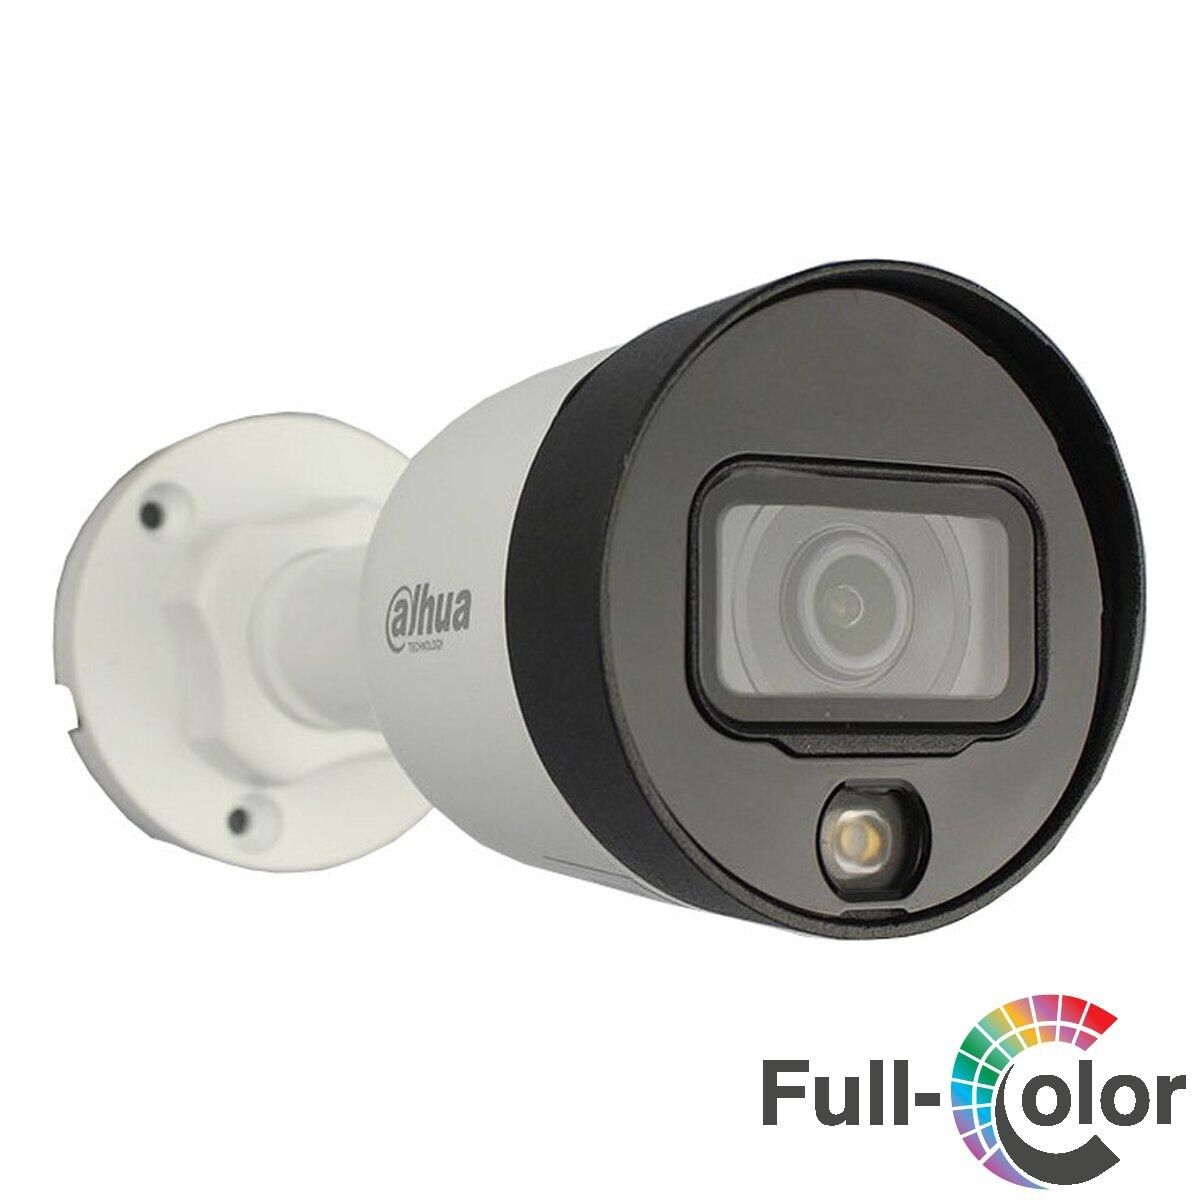 IP-камера Dahua с IPC-K22P 2.8 мм (IPC-K42P)   
Разрешение камеры 2 Мп